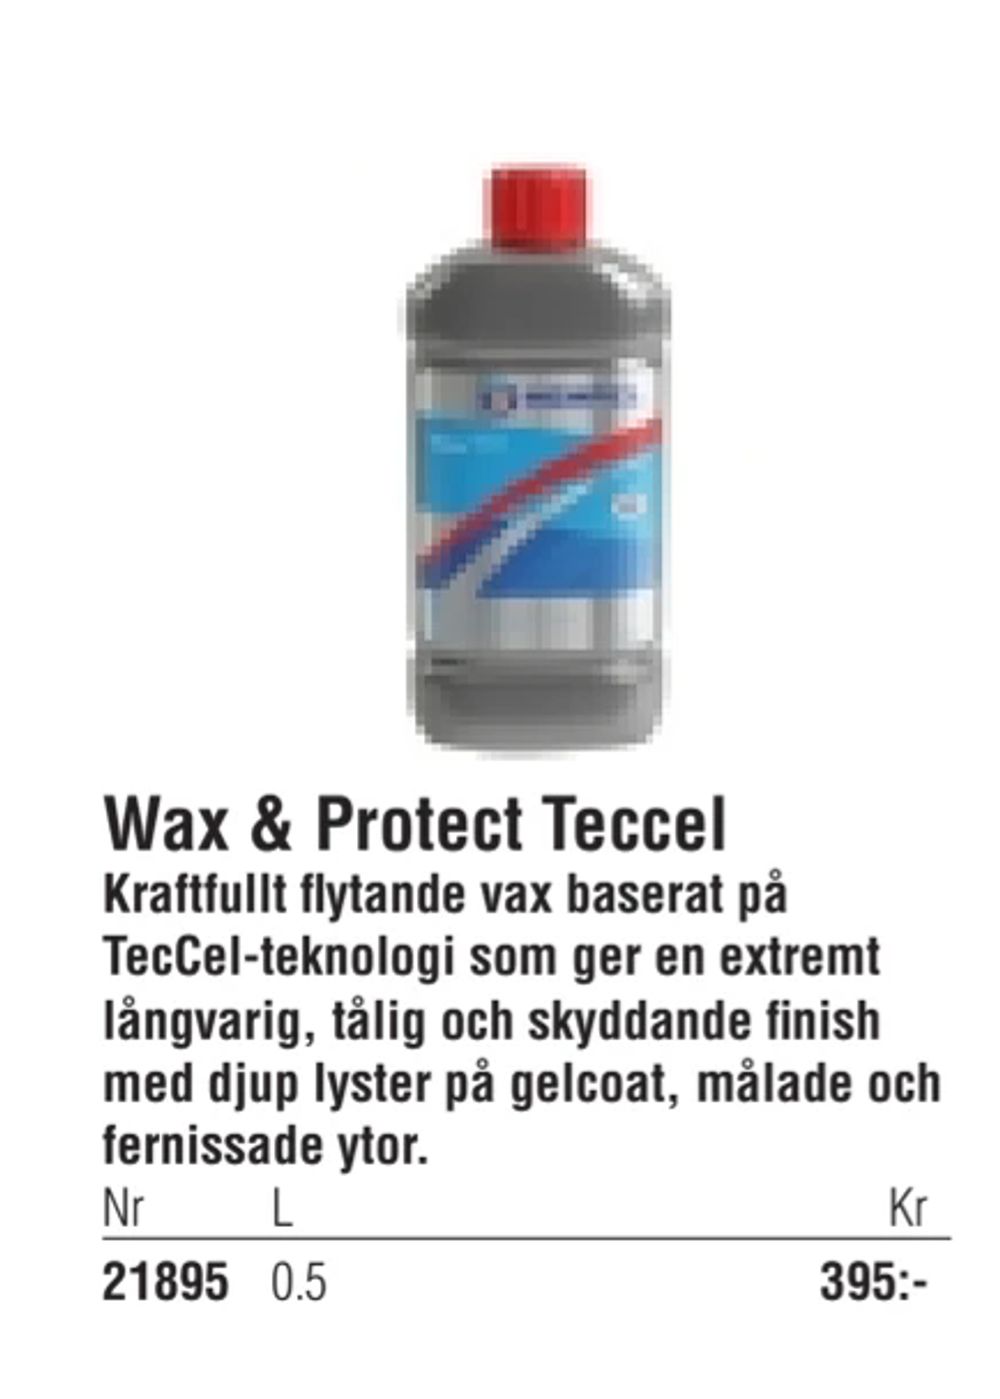 Erbjudanden på Wax & Protect Teccel från Erlandsons Brygga för 395 kr